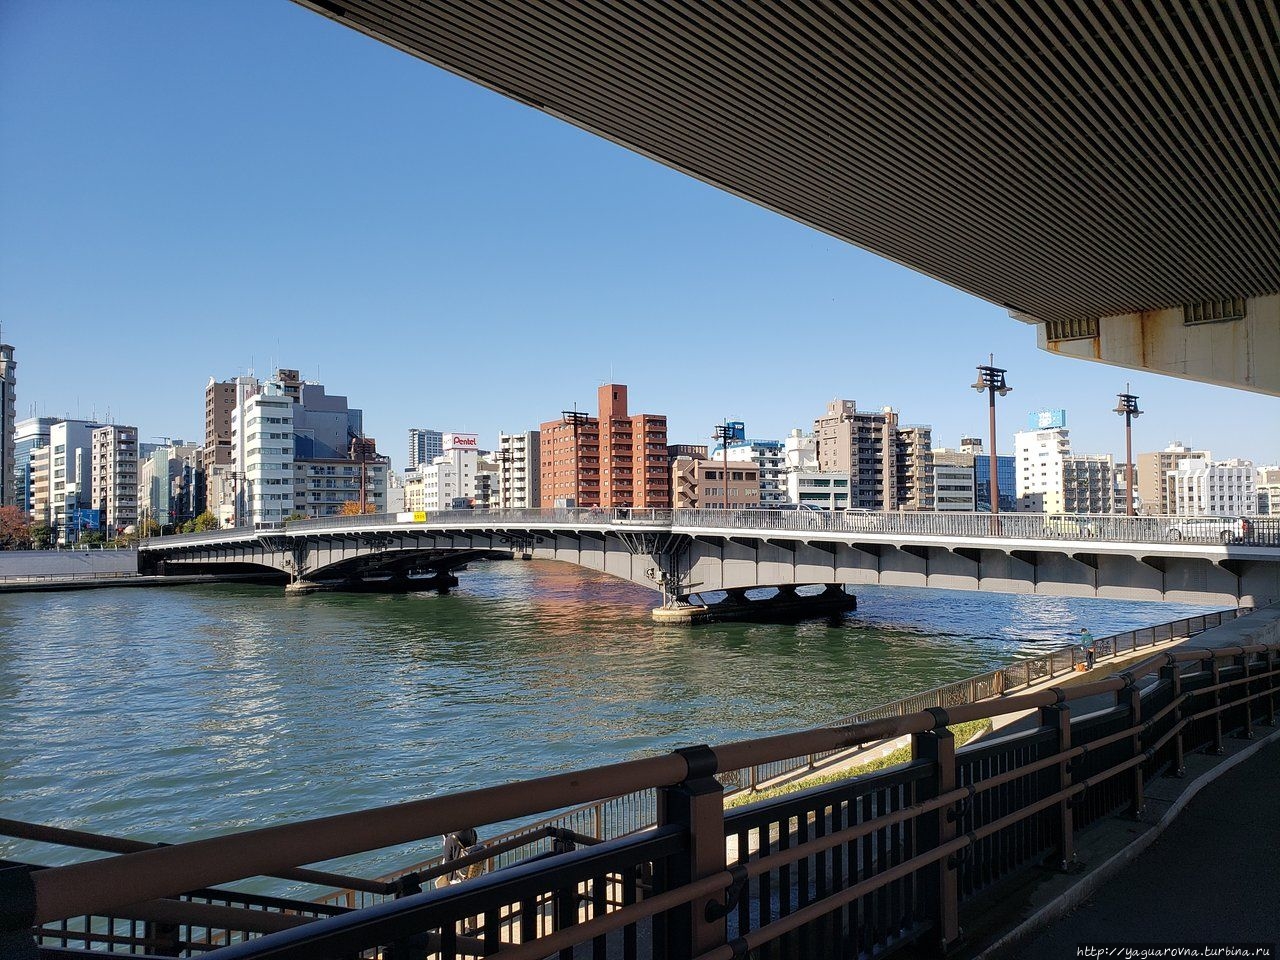 Низкий мост через реку Сумида, фото из интернета. Токио, Япония